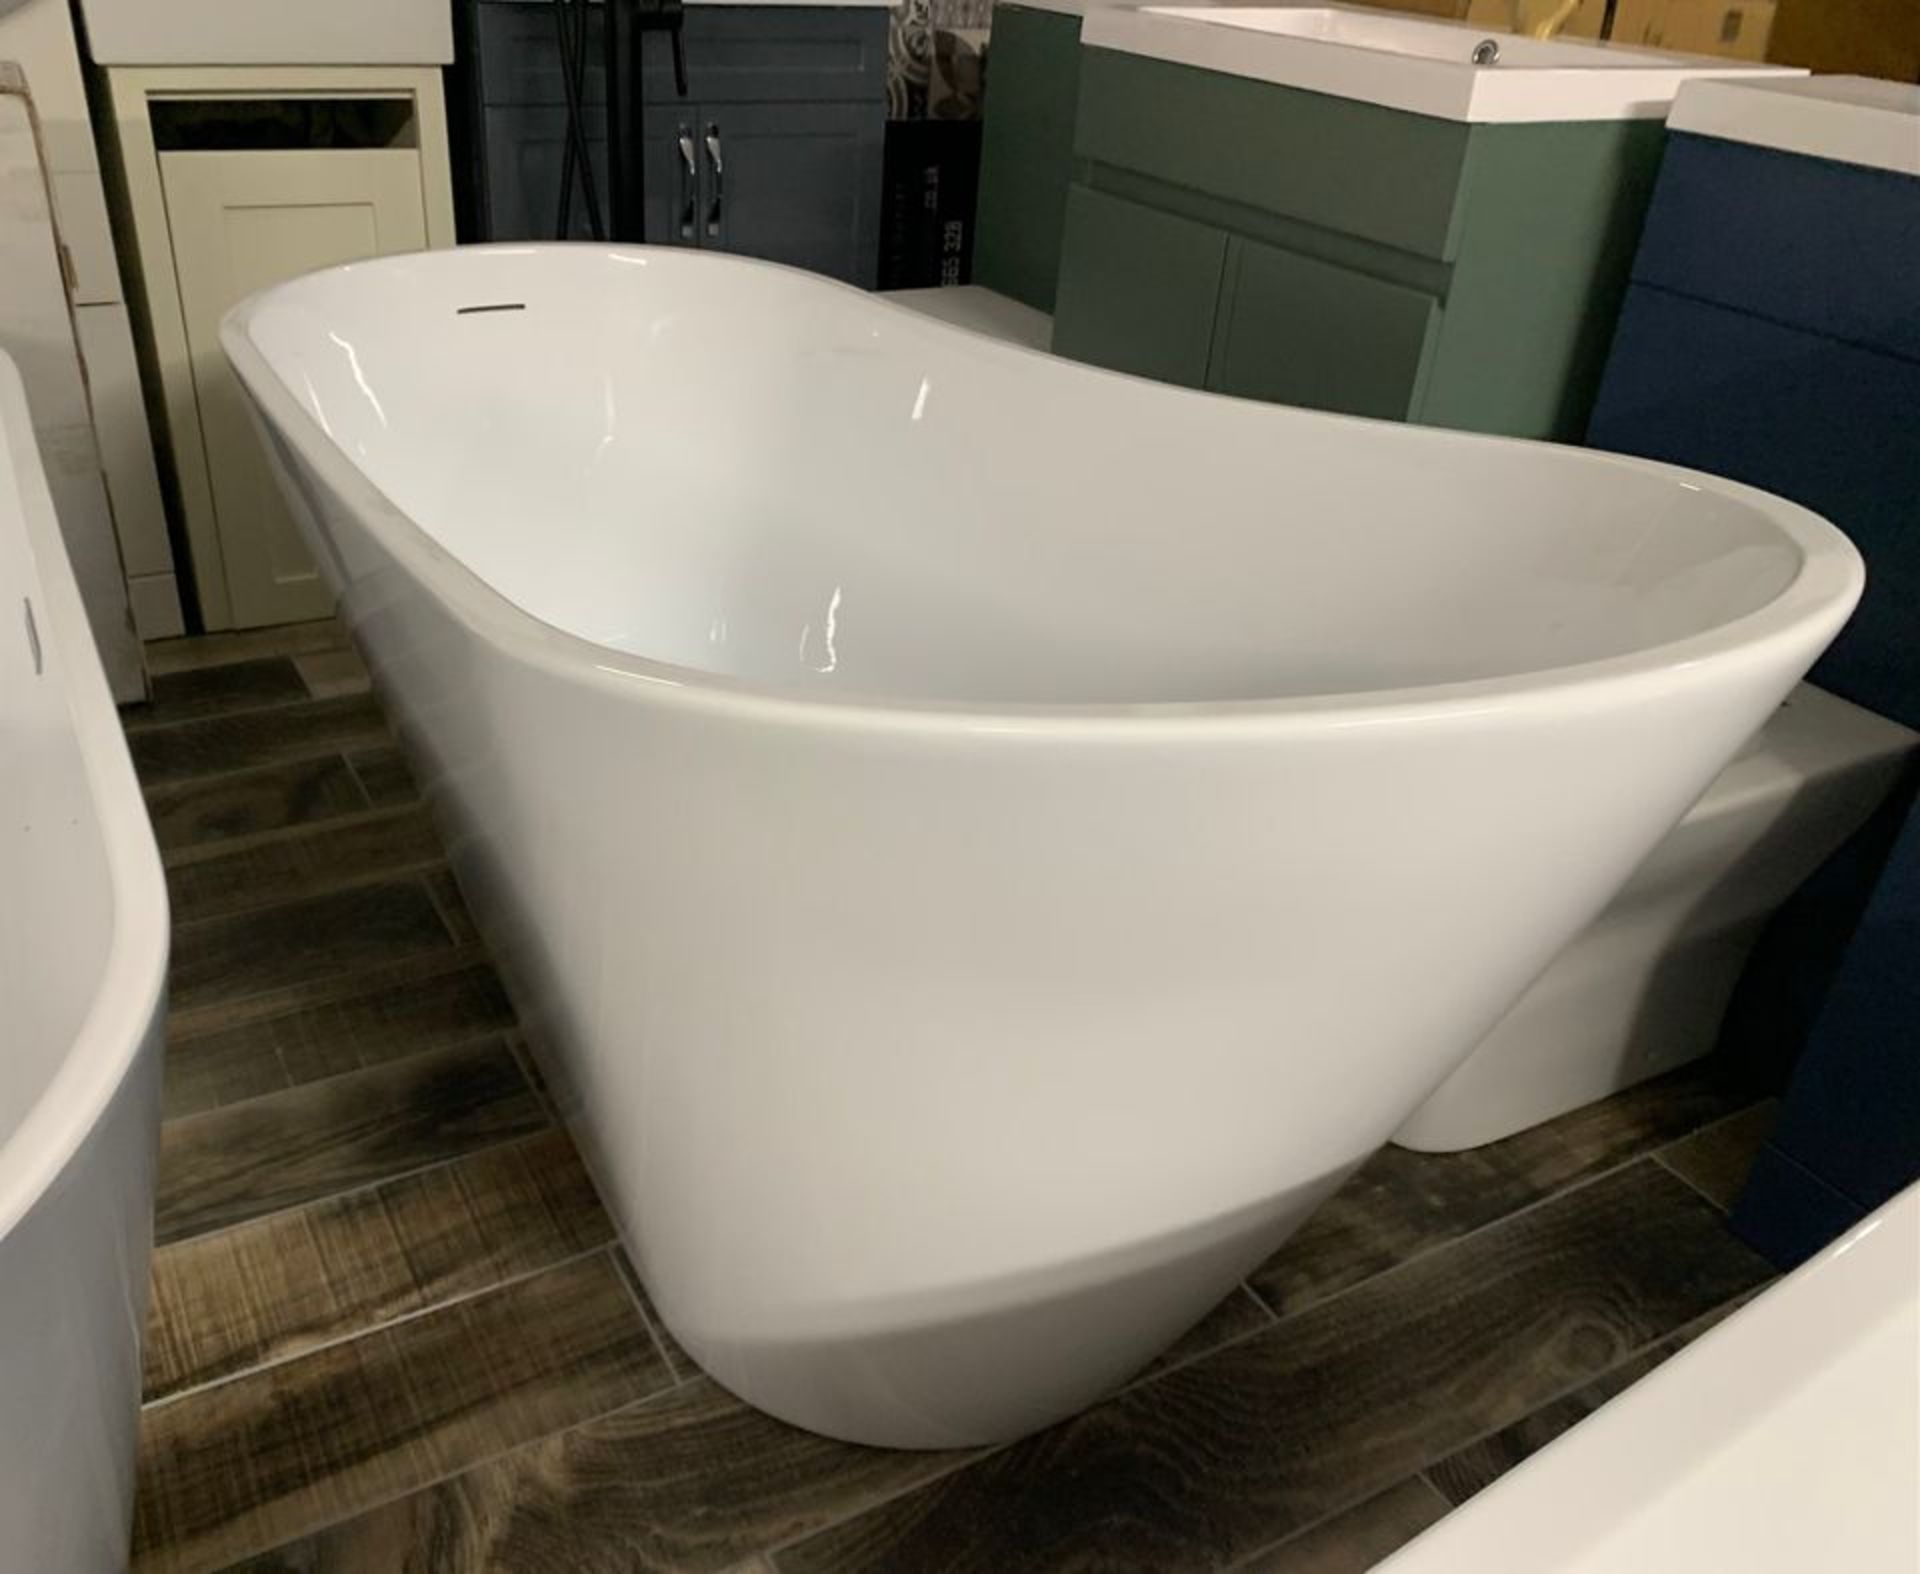 Designer 'CASCADE' White Freestanding Modern Slipper Bath in Arctic White – 1700mm x 740mm